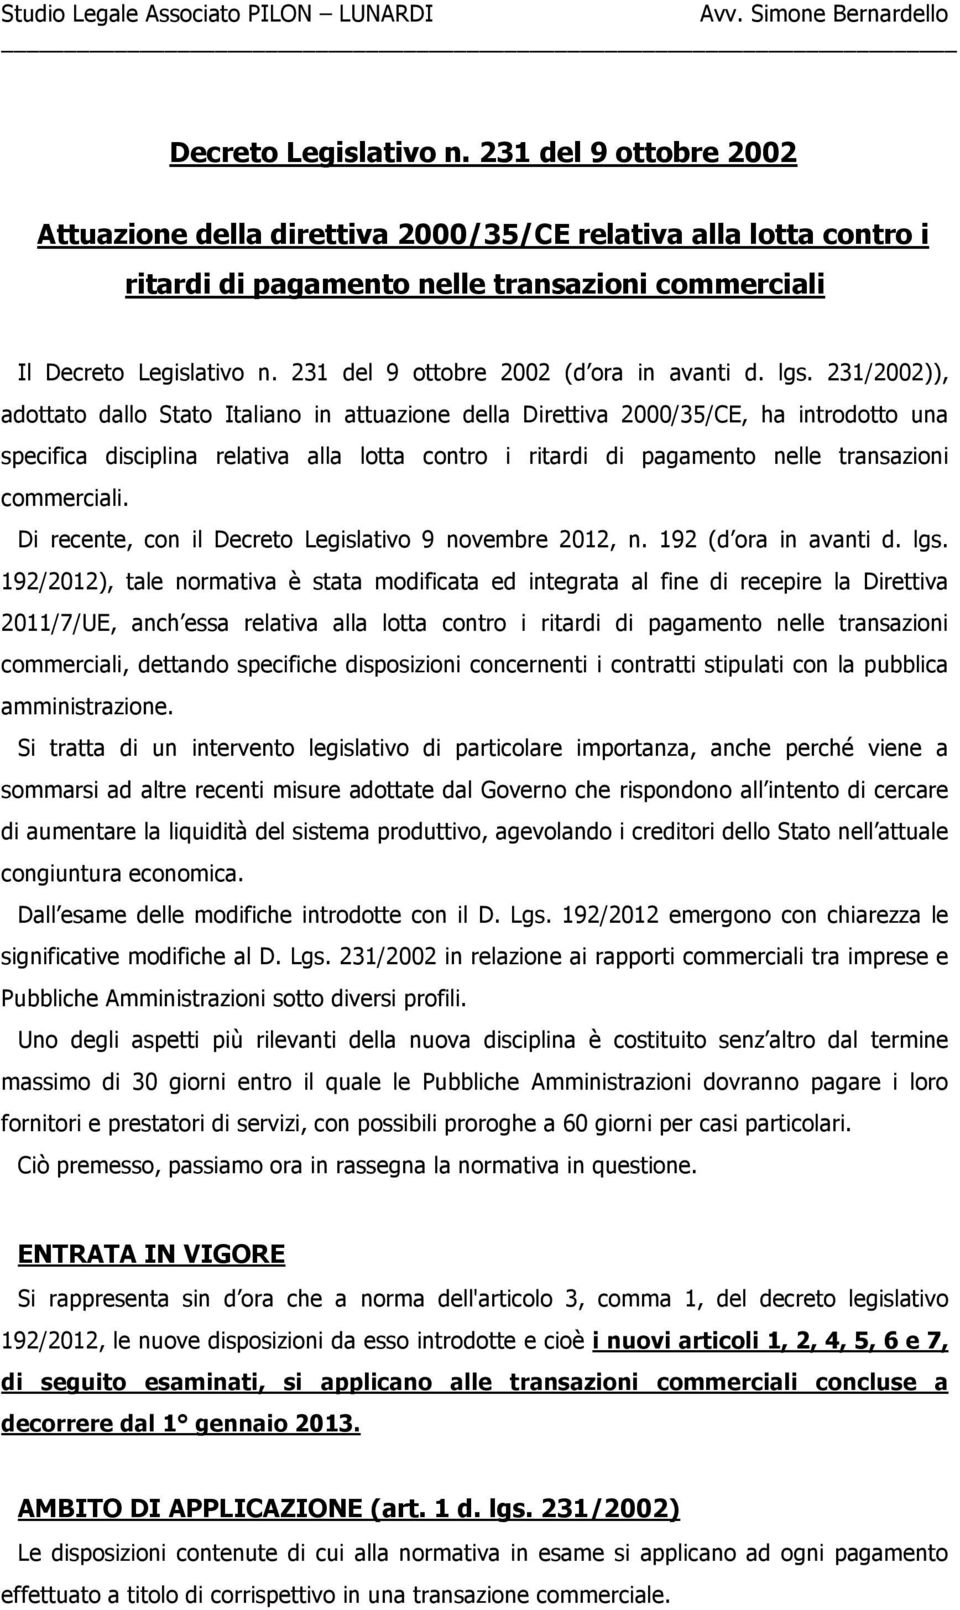 231/2002)), adottato dallo Stato Italiano in attuazione della Direttiva 2000/35/CE, ha introdotto una specifica disciplina relativa alla lotta contro i ritardi di pagamento nelle transazioni